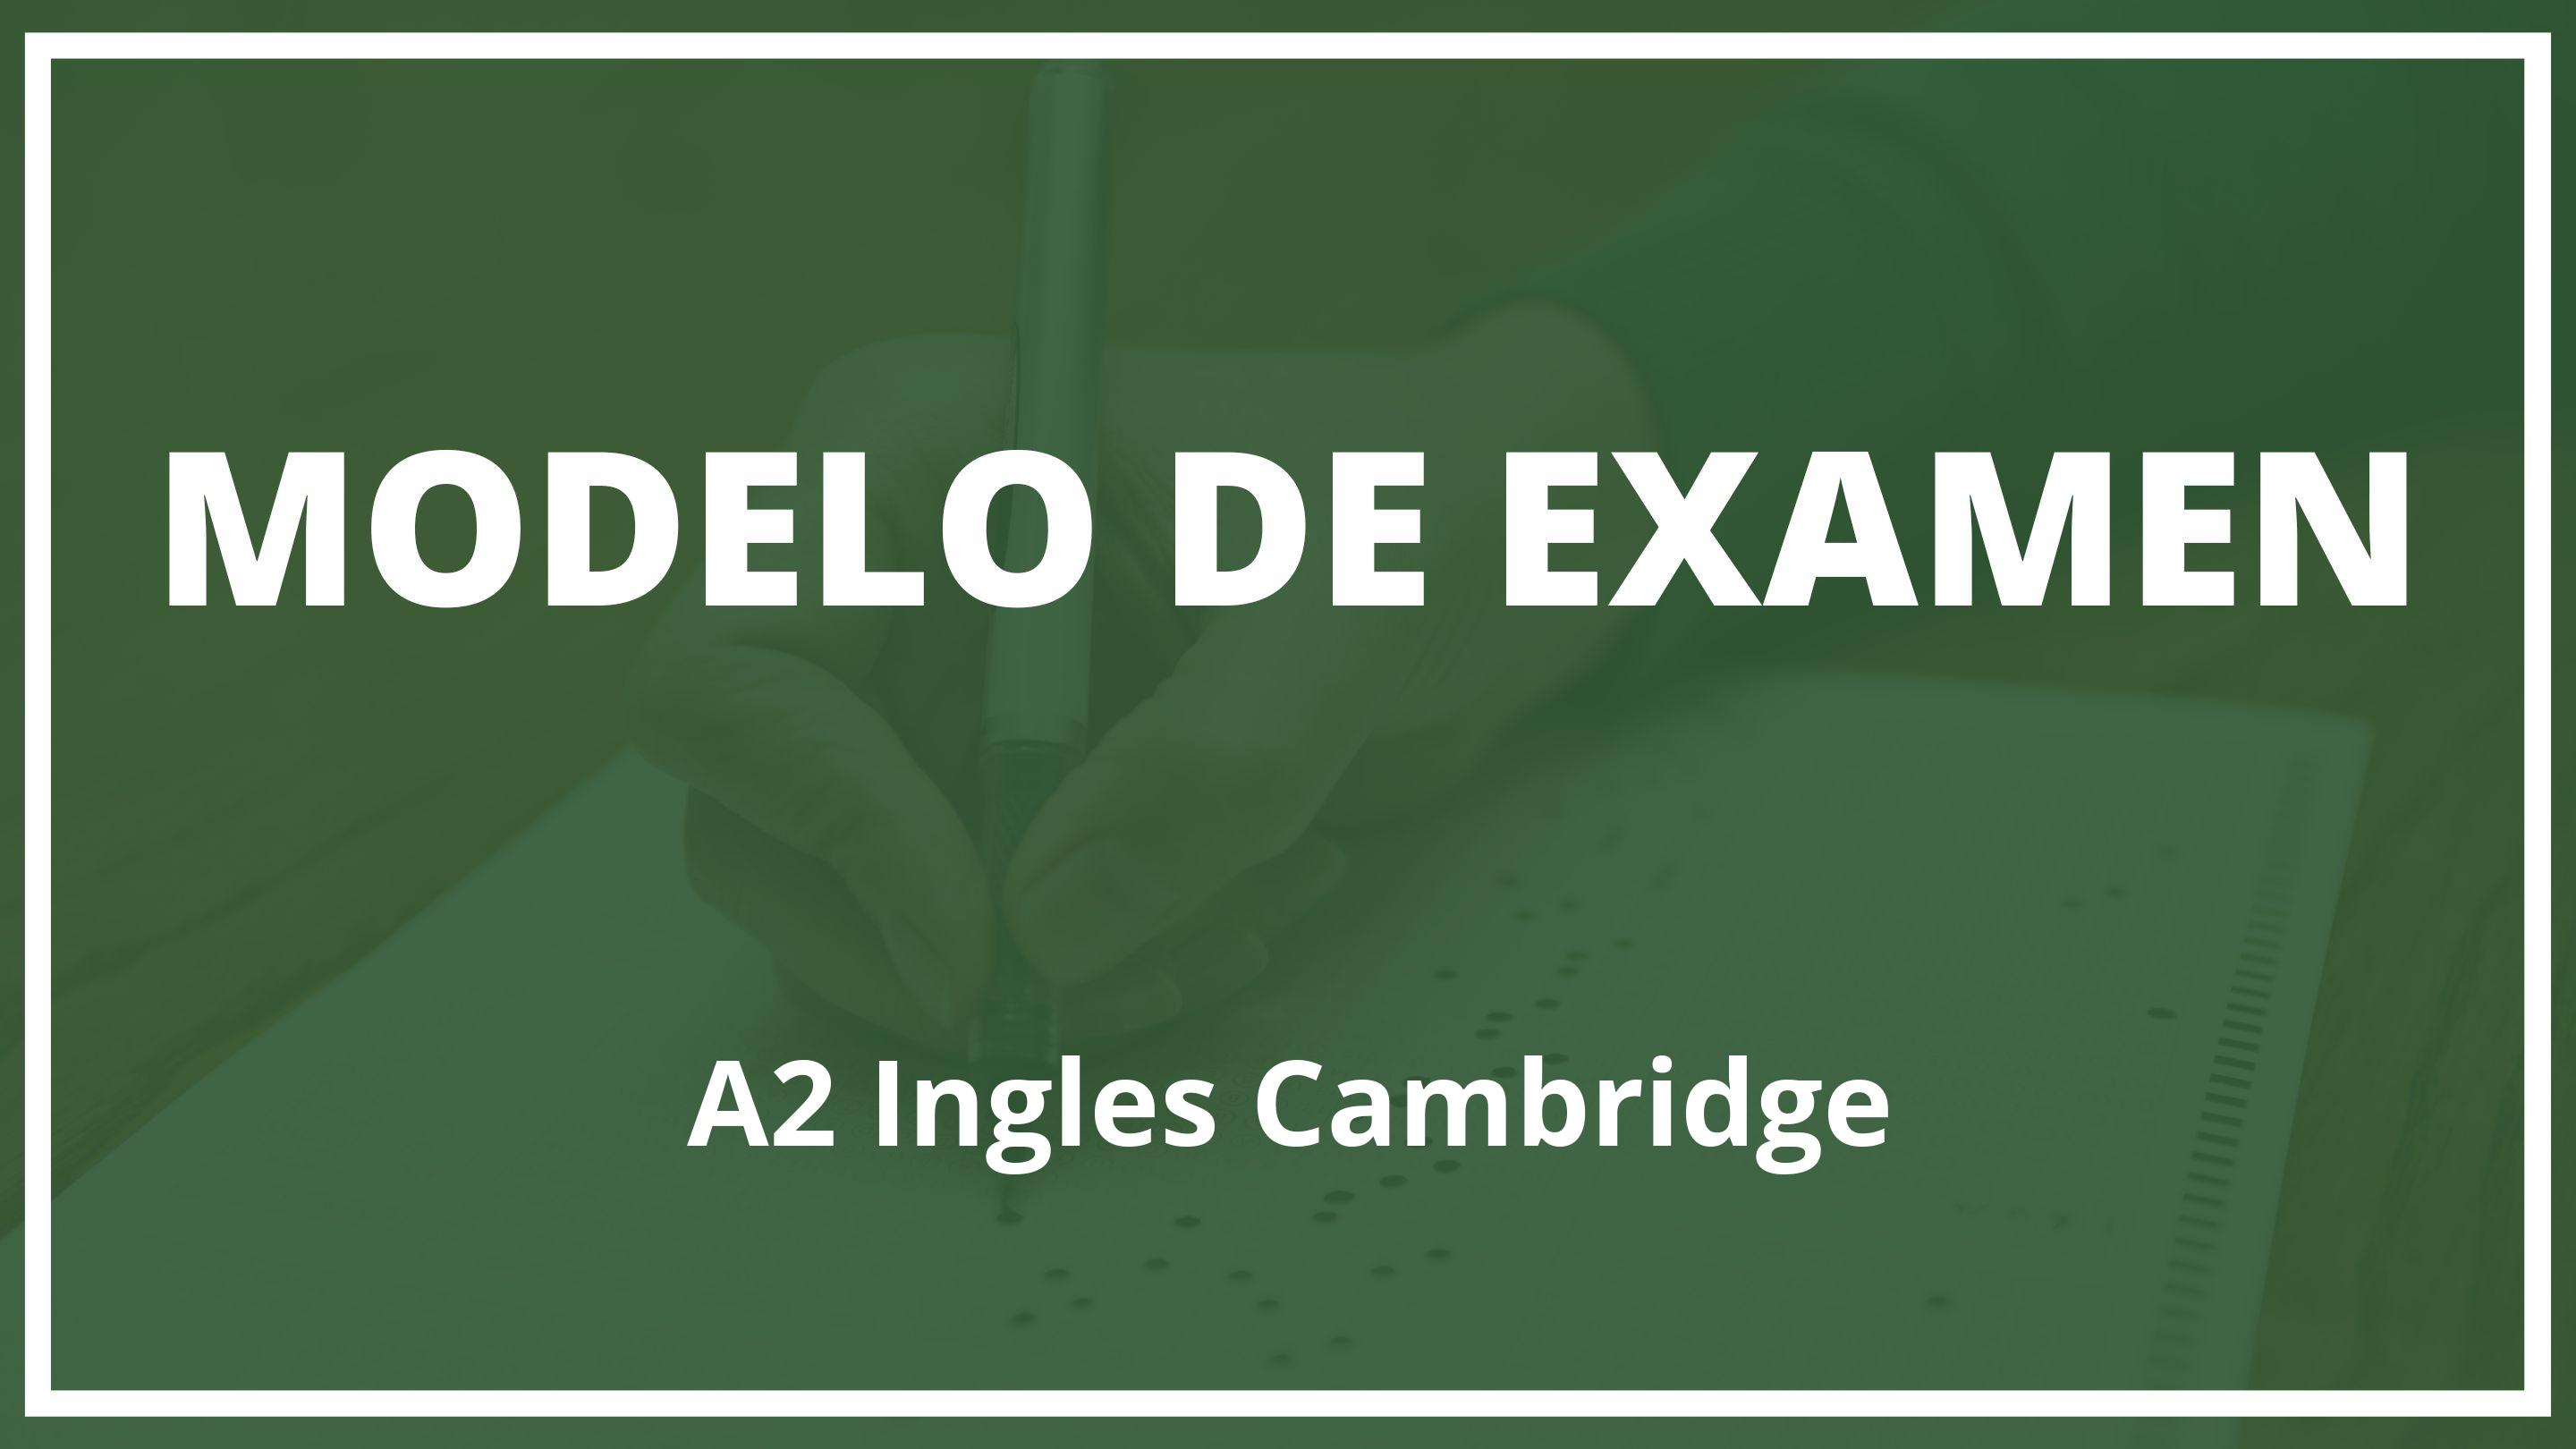 Examen A2 Ingles Cambridge